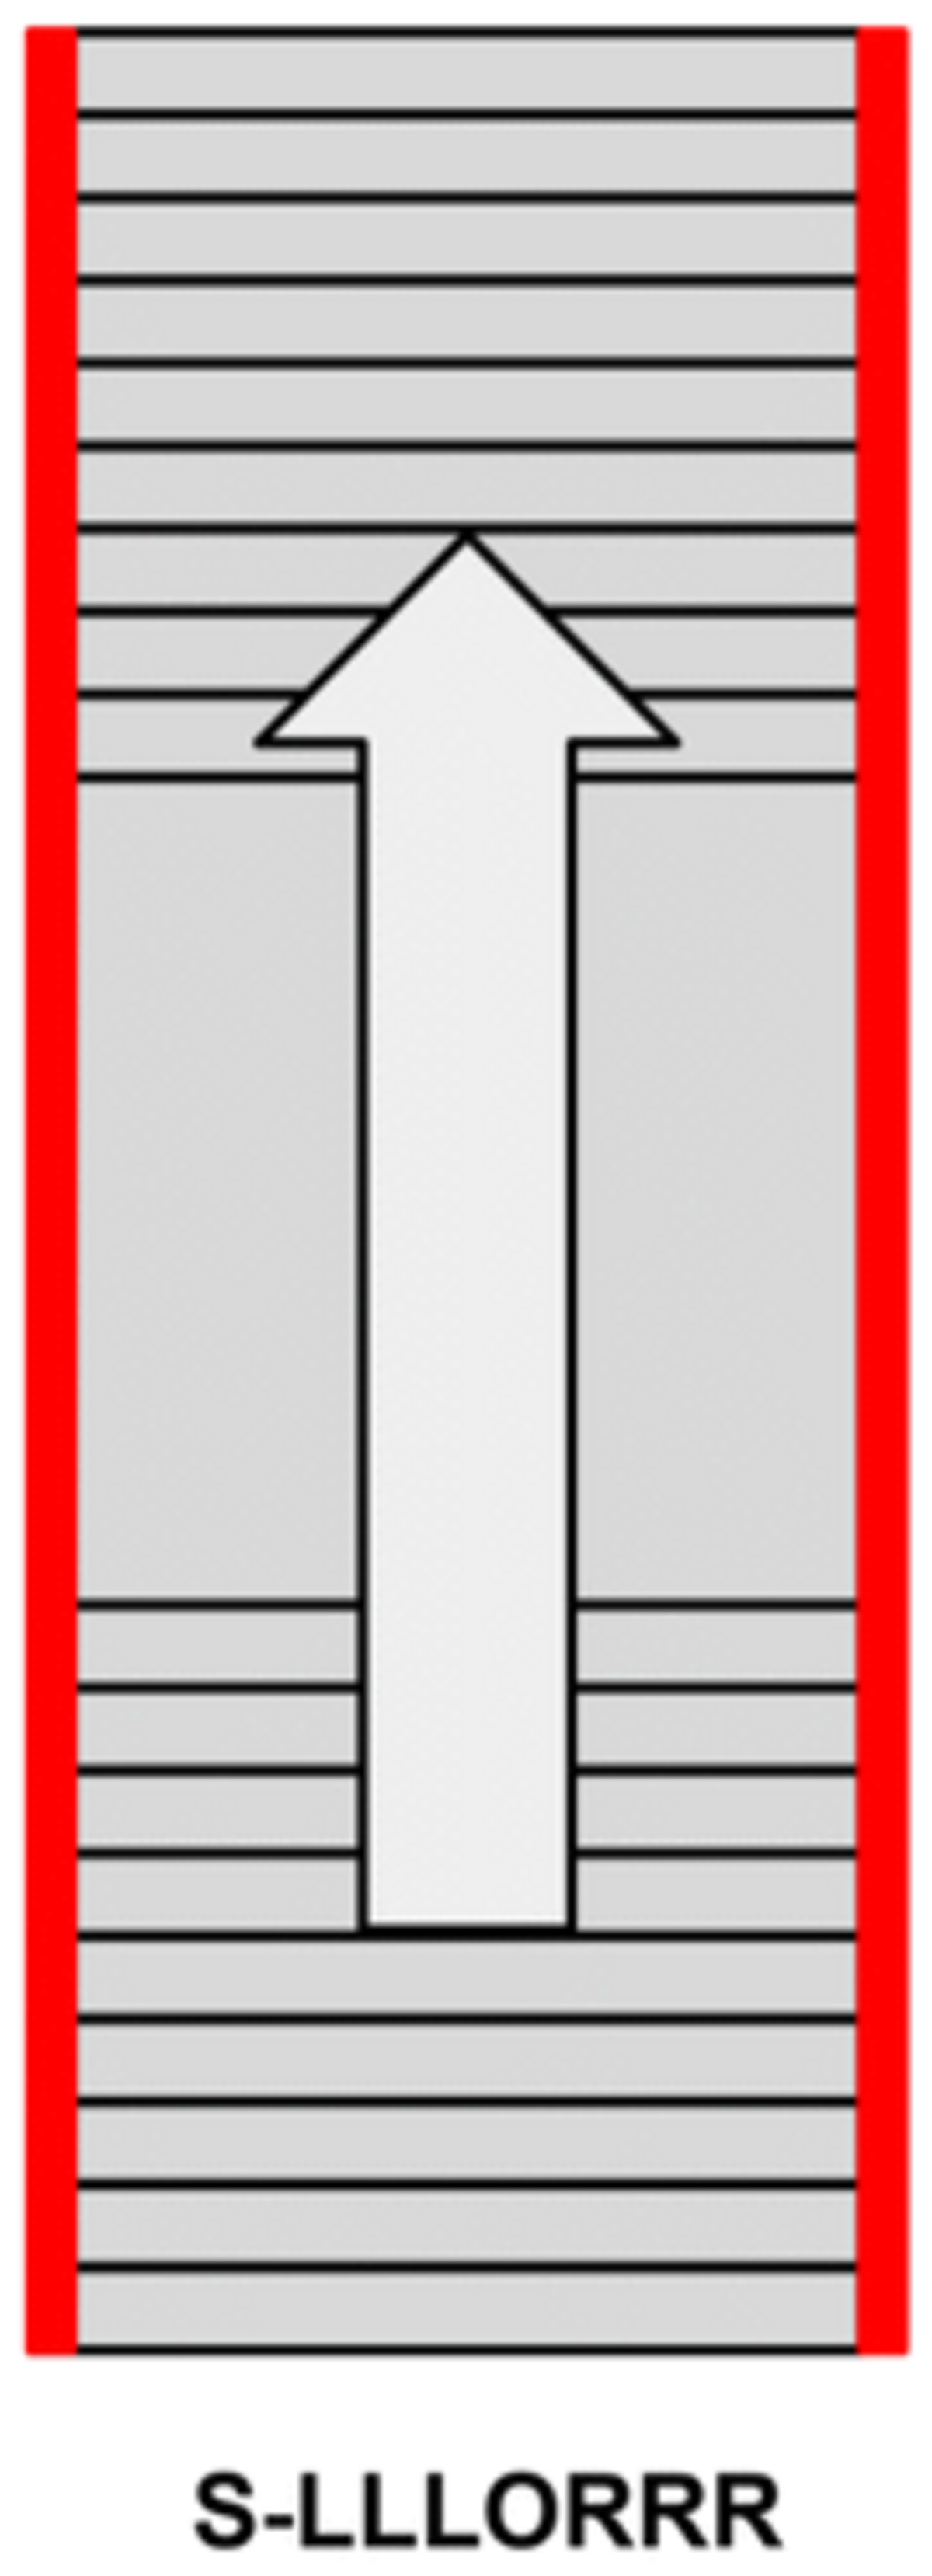 Scala esterna con pianerottolo +  scala dritta, corrimano e ringhiera su entrambi i lati.